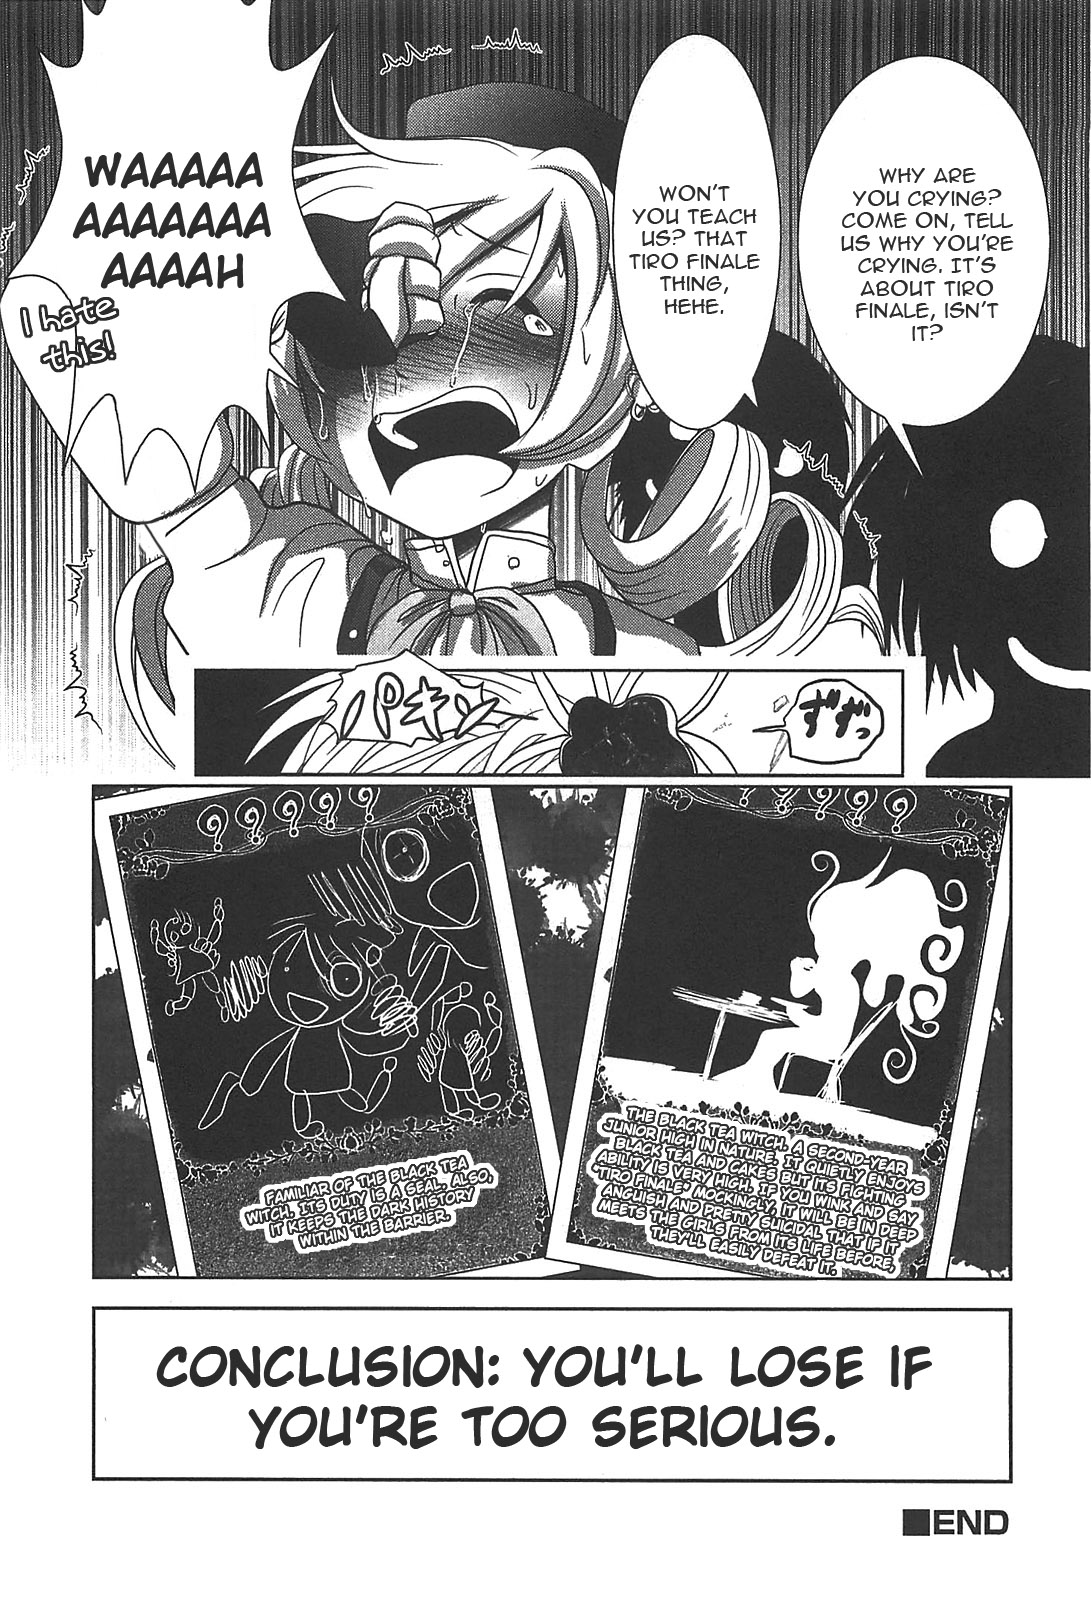 魔法少女まどか☆マギカコミックアンソロジー第01巻